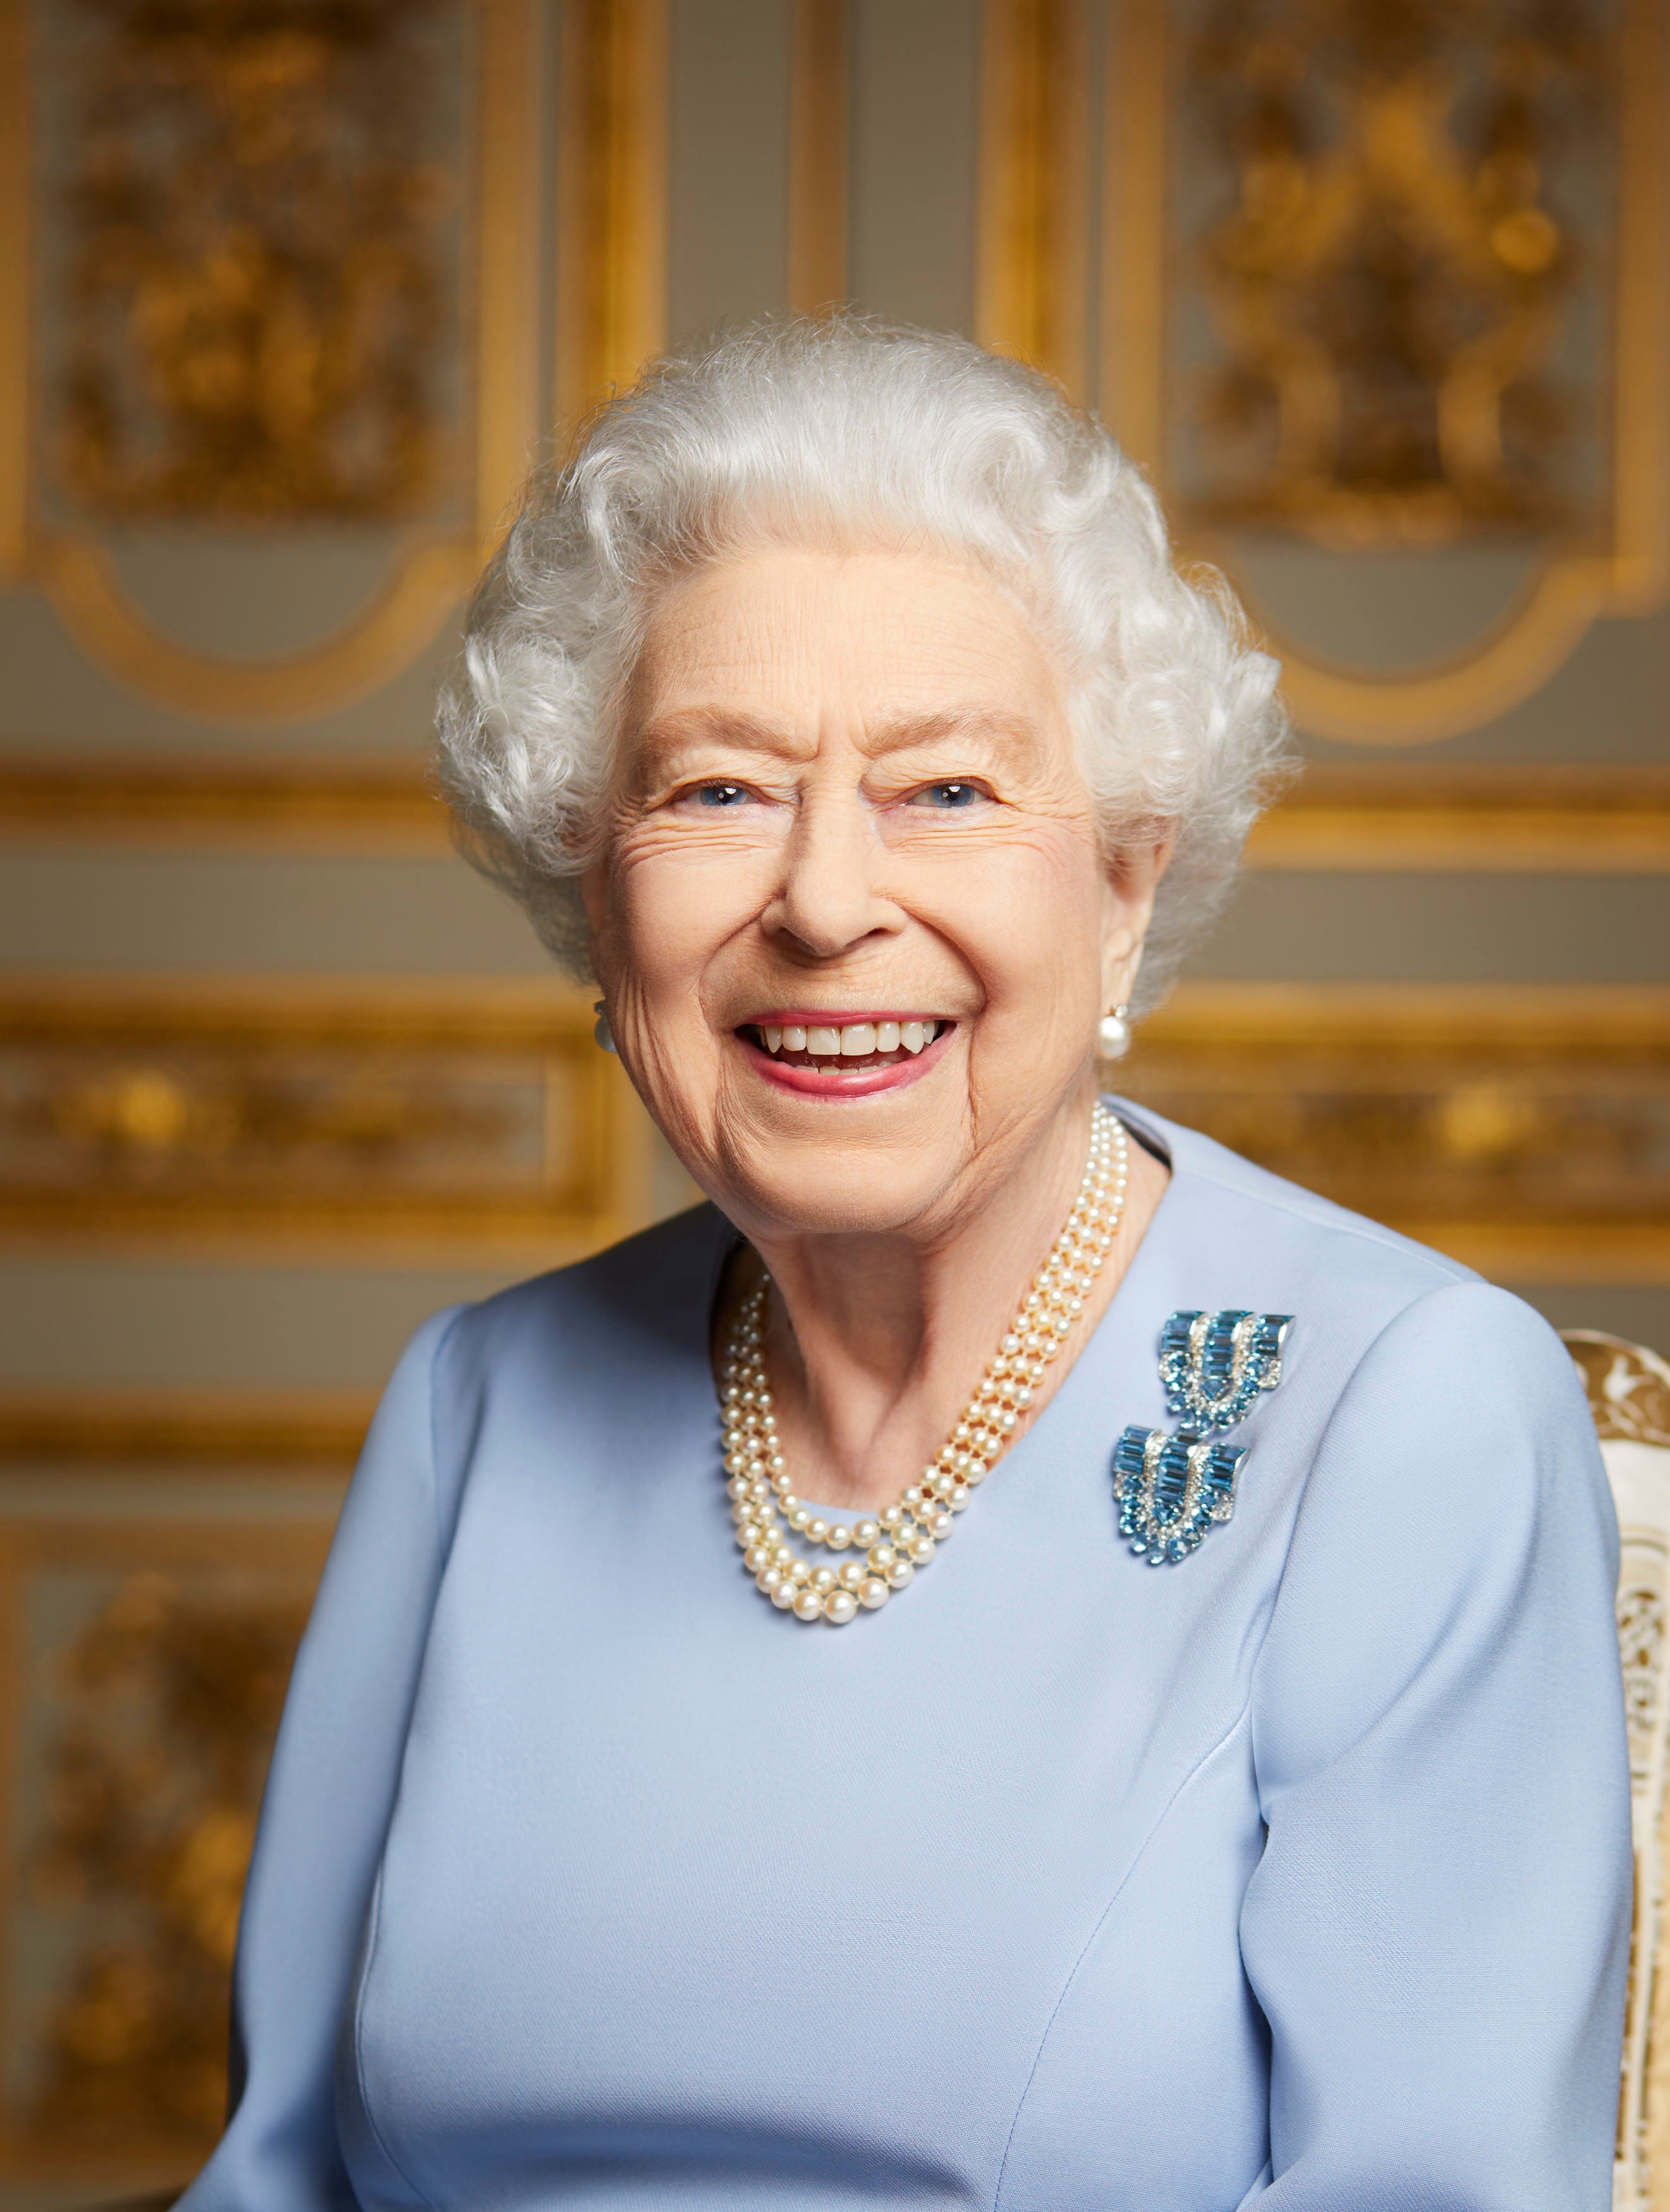 La reina Isabel será recordada en una celebración de su vida y reinado